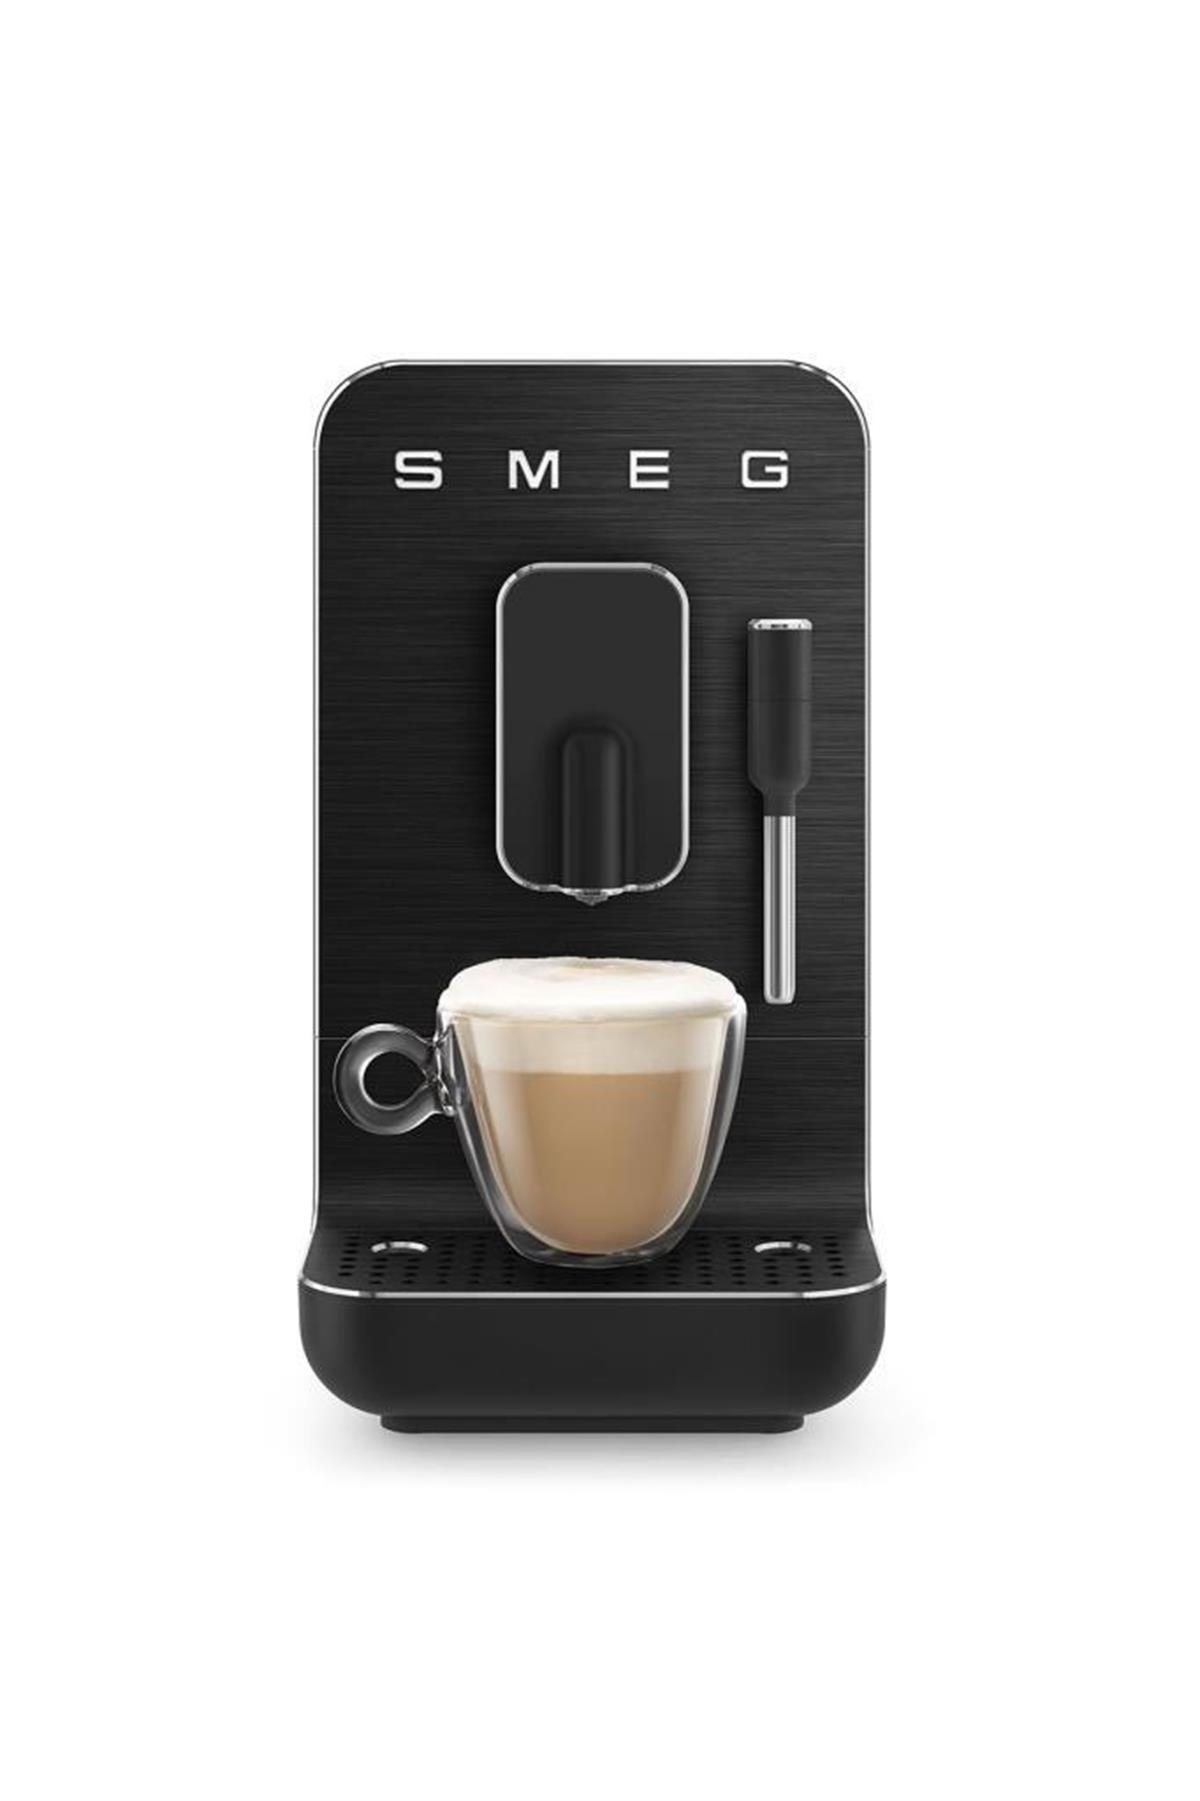 SMEG BCC02 Espresso Otomatik Kahve Makinesi Full Black MatKahve Öğütme  MakinesiSmeg25650,00 TL